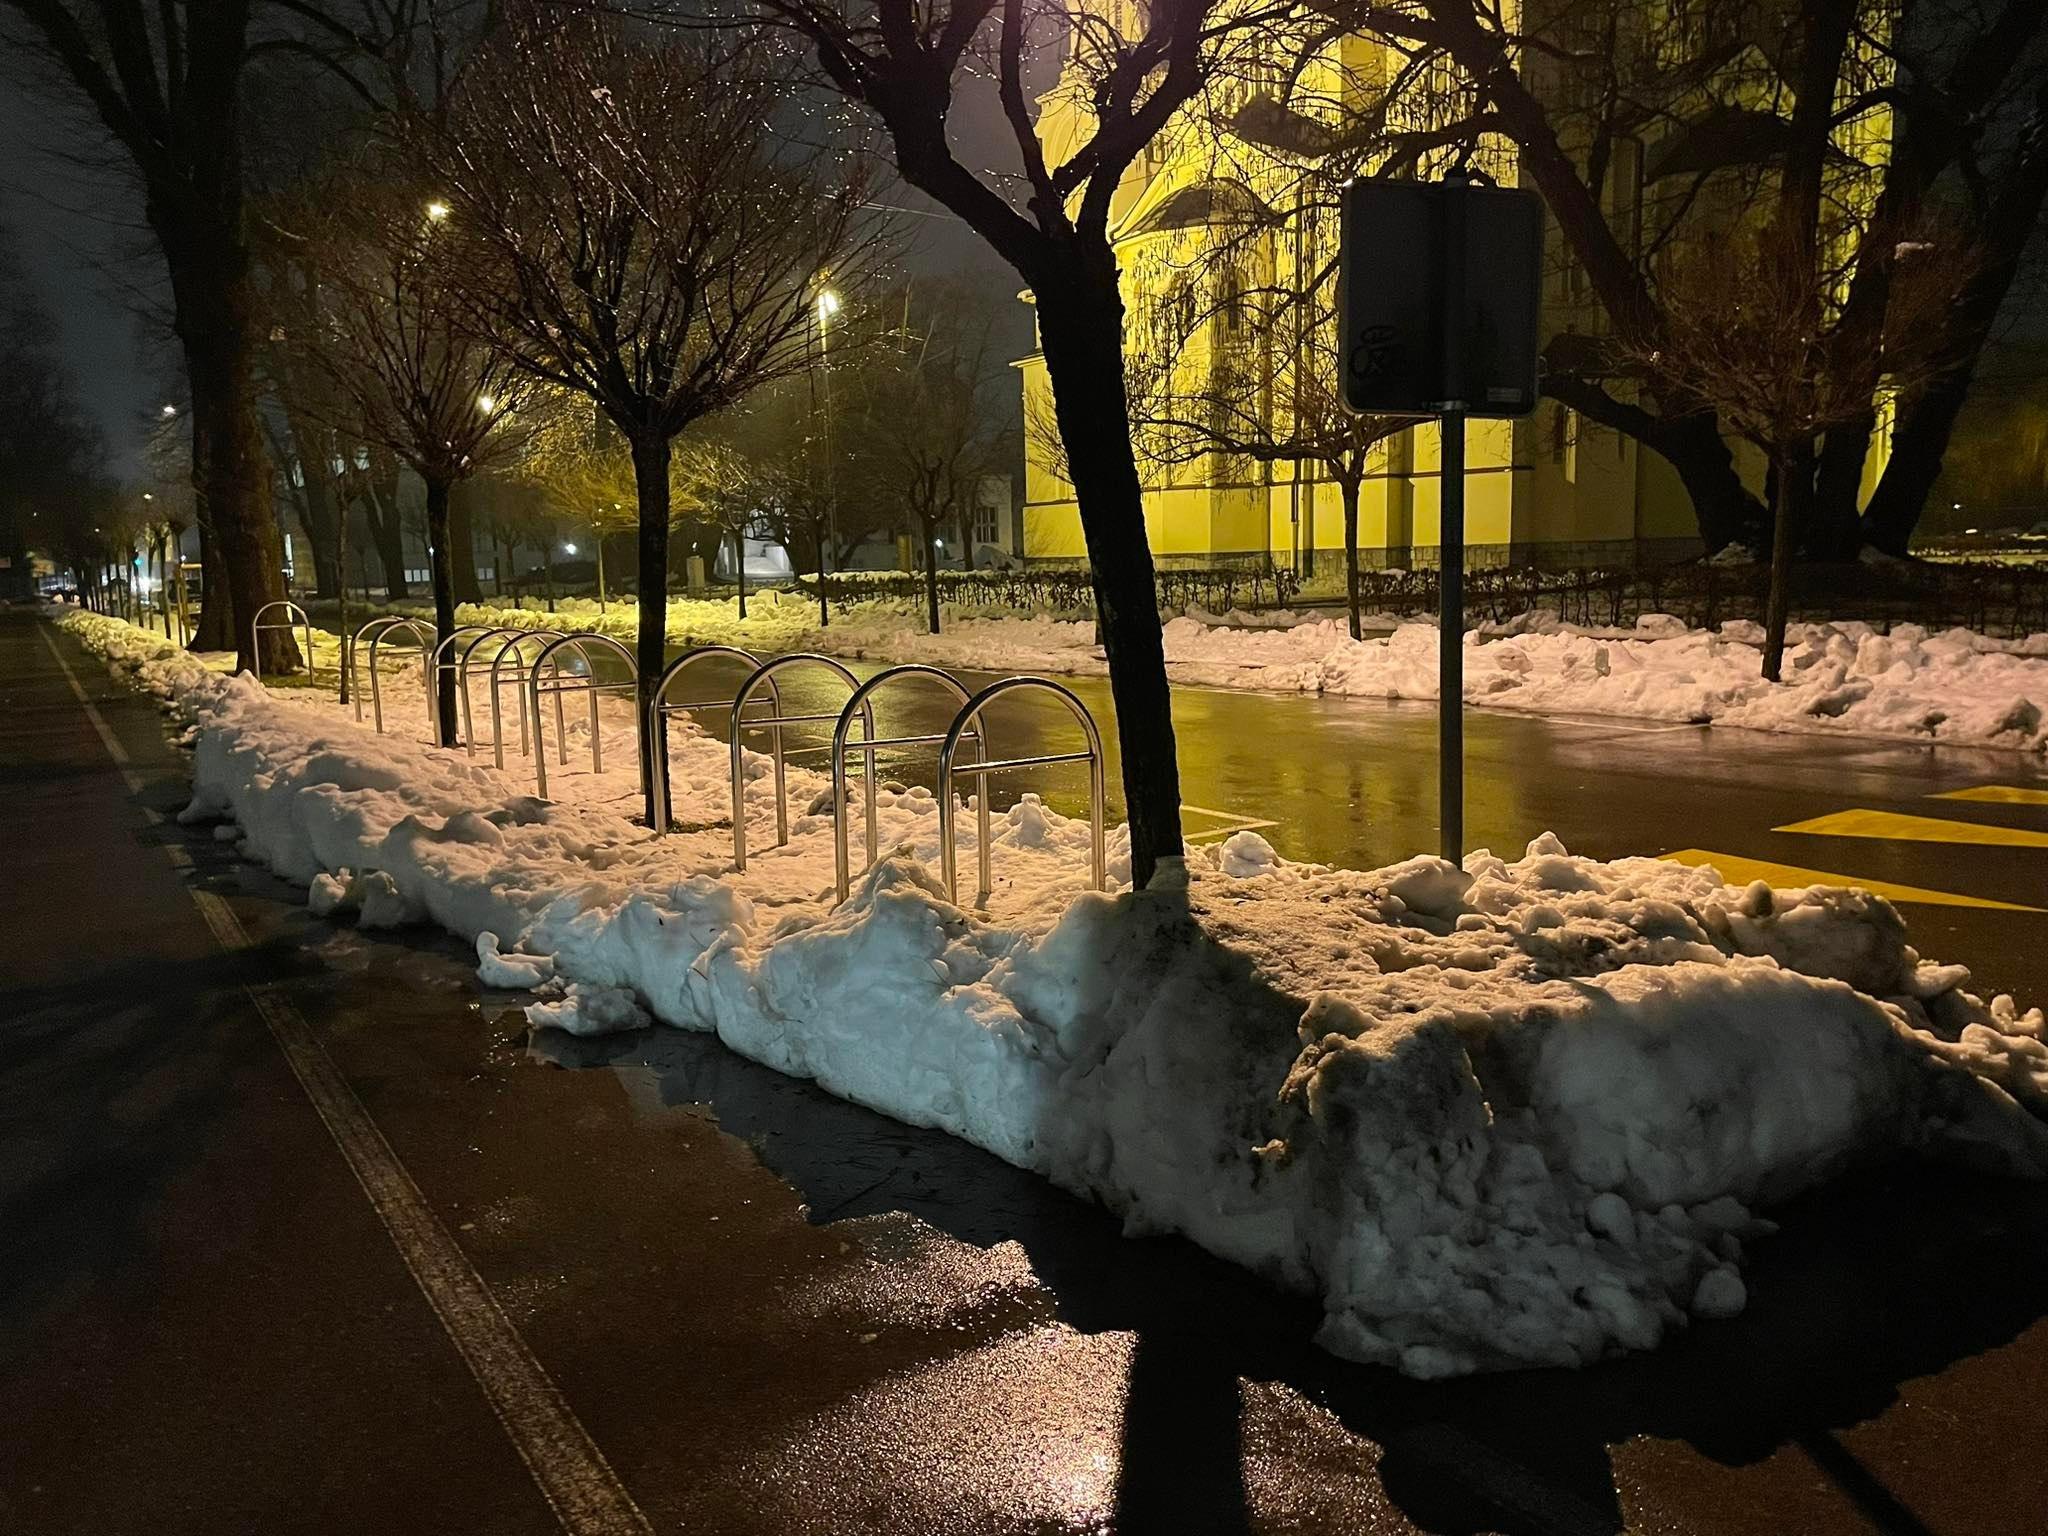 Fotografija je bila posneta izpred Narodne galerije v Ljubljani. 

Sneg zavzema celotno kolesarko progo in se v visokih 'kupih' nabira ob cesti.